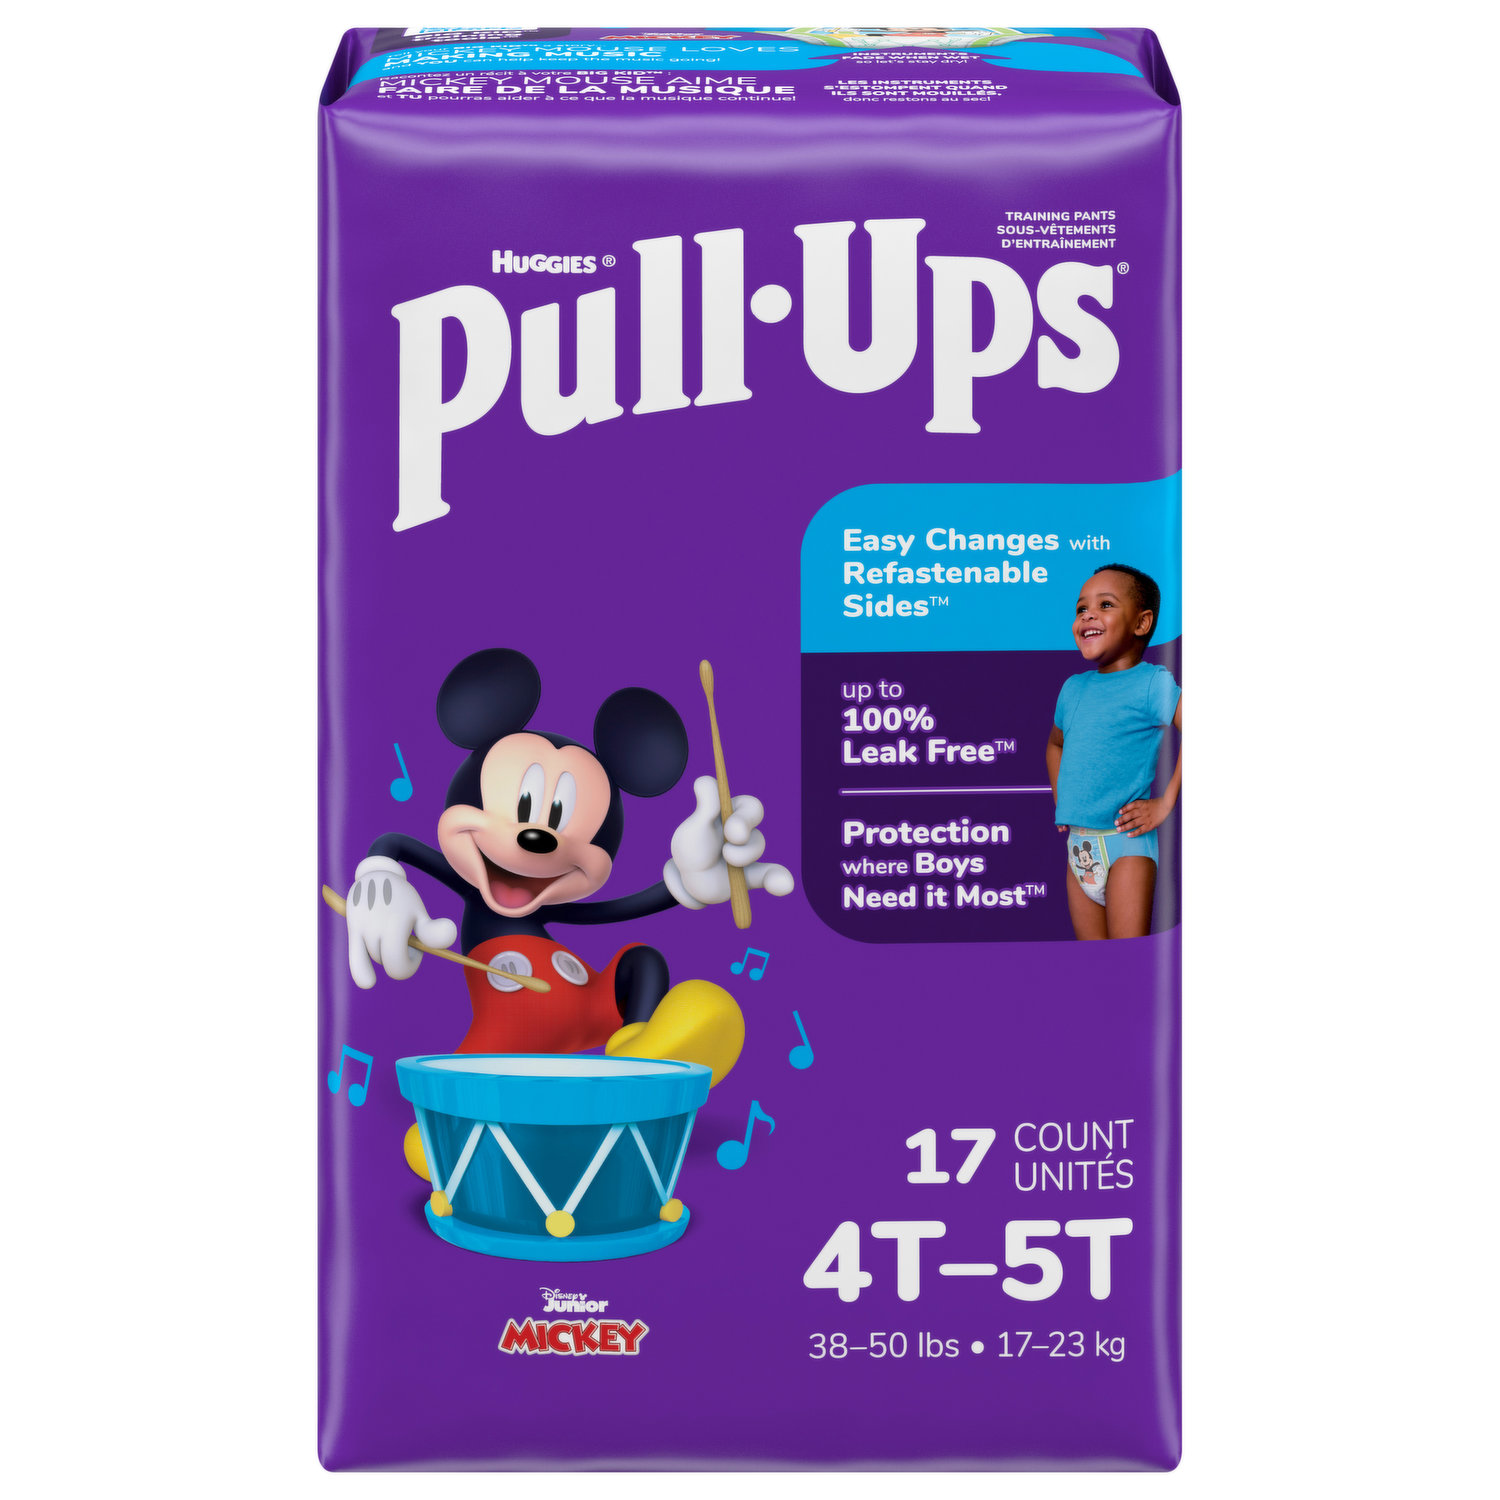 Pull-Ups Training Pants, Disney Junior Minnie, 3T-4T (32-40 lbs